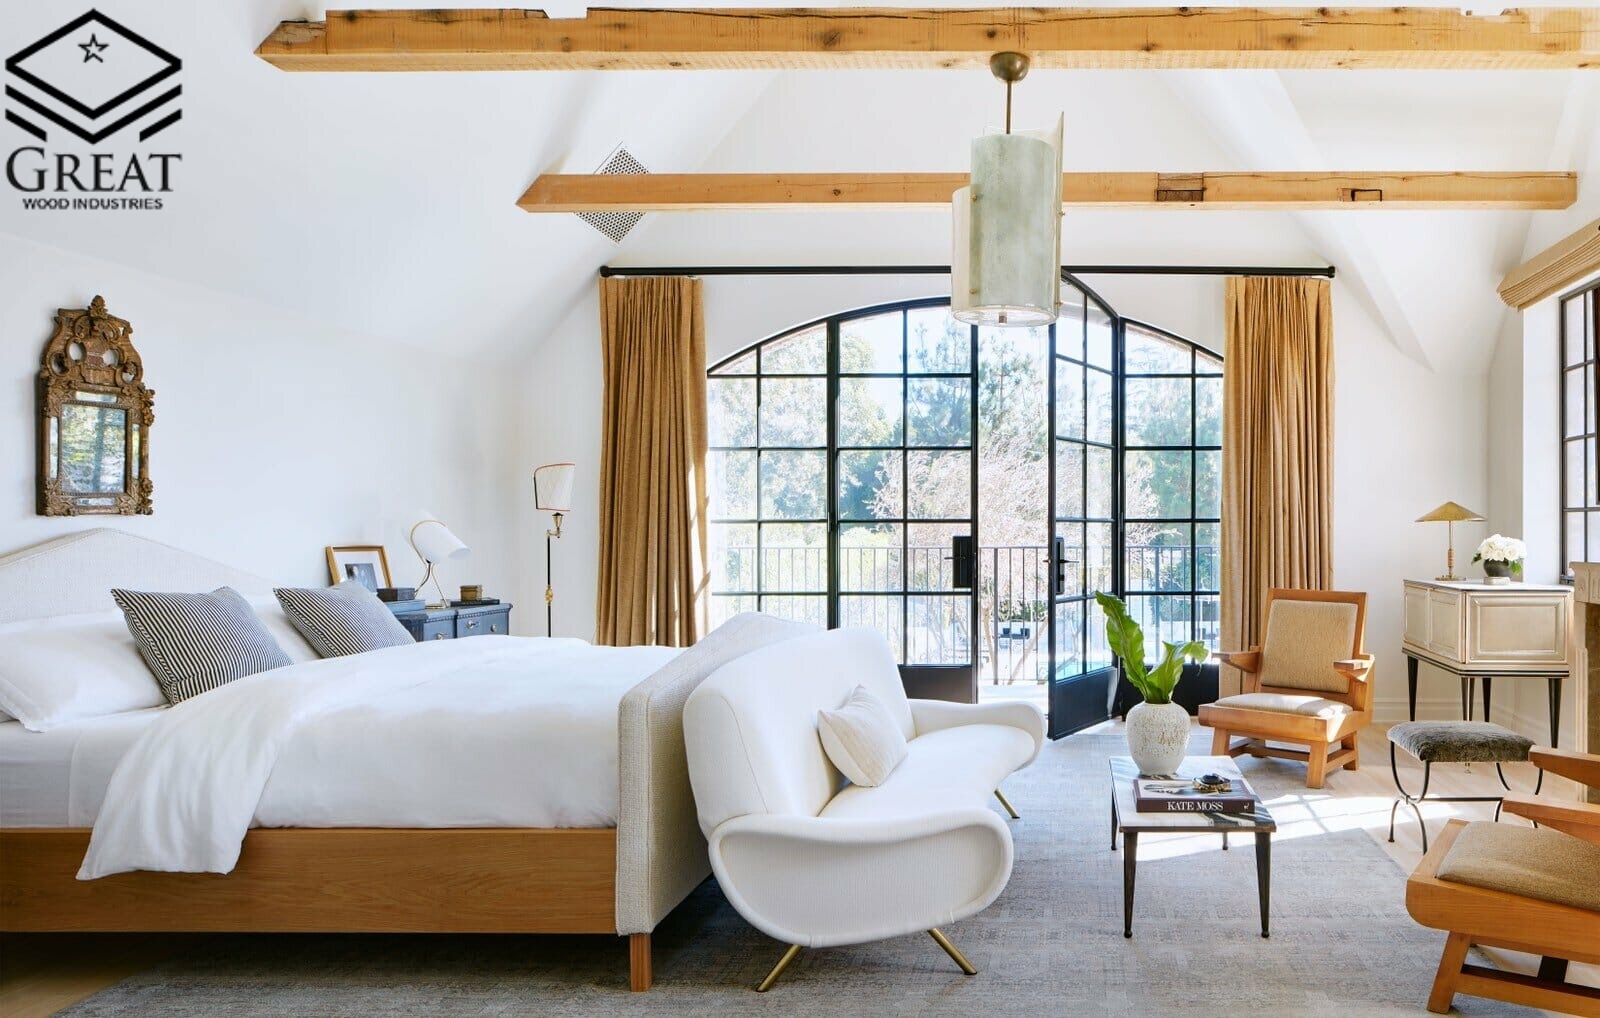 گریت کابینت | شرکت کابینت آشپزخانه گریت | Modern rustic master bedroom ideas create a personal retreat by Nate Berkus ink